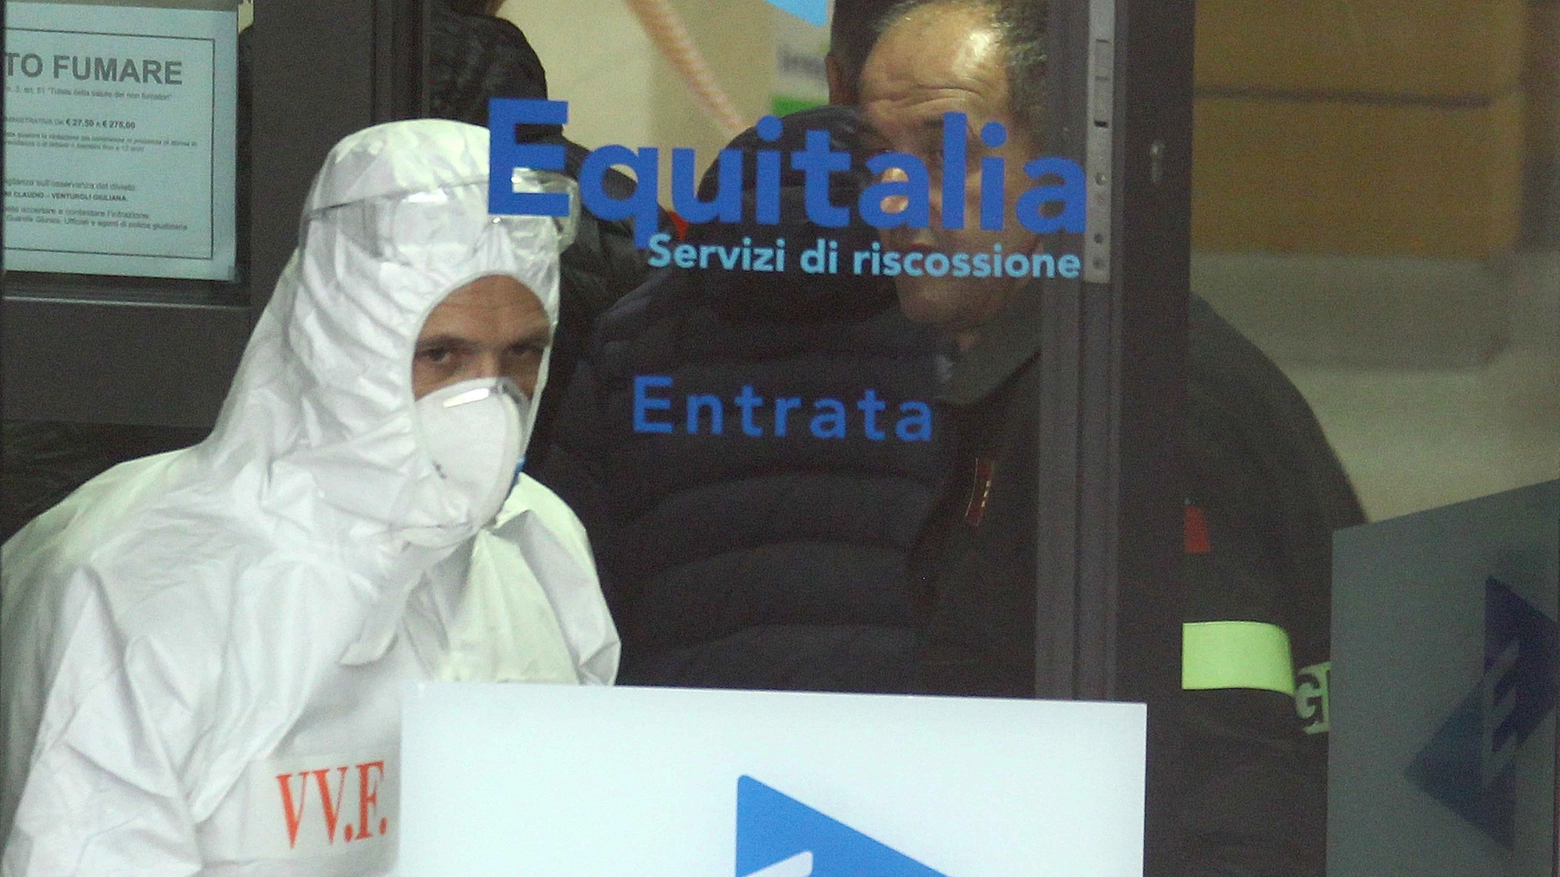 Sondrio, busta sospetta nella sede di Equitalia (National Press)